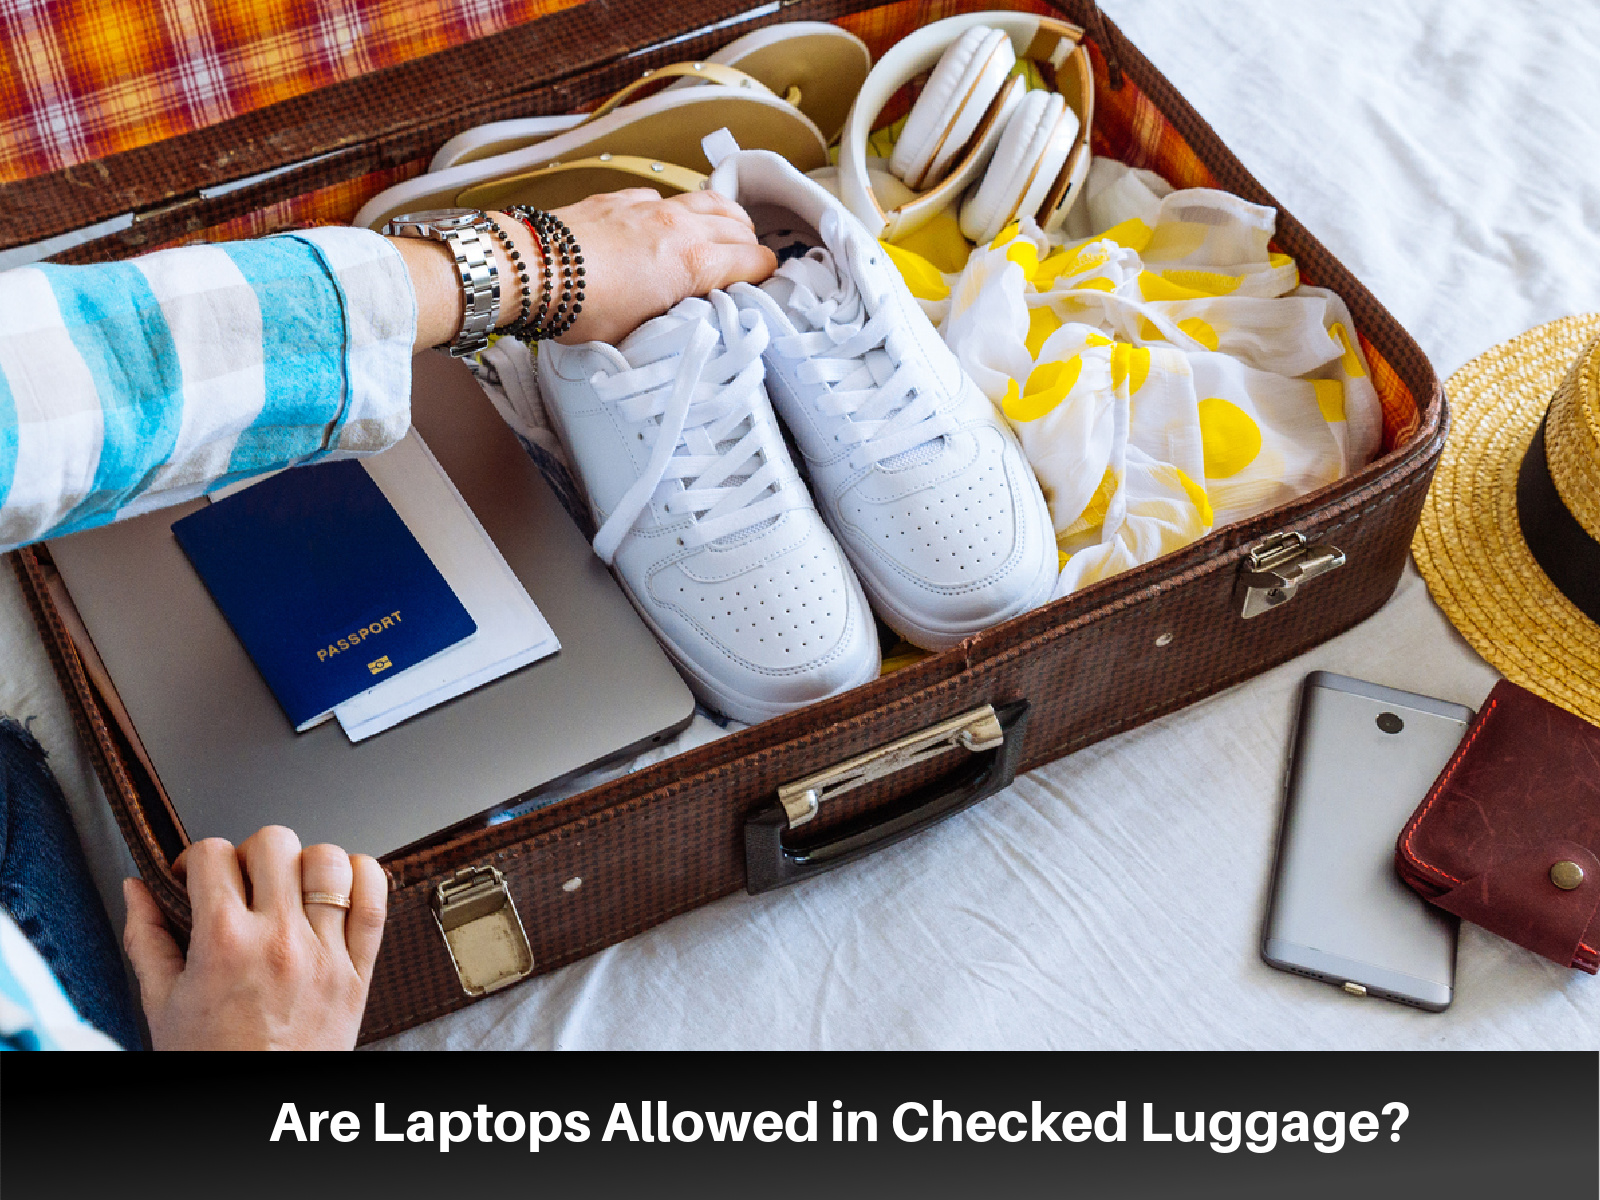 Je uloženie notebooku do odbavenej batožiny bezpečné?